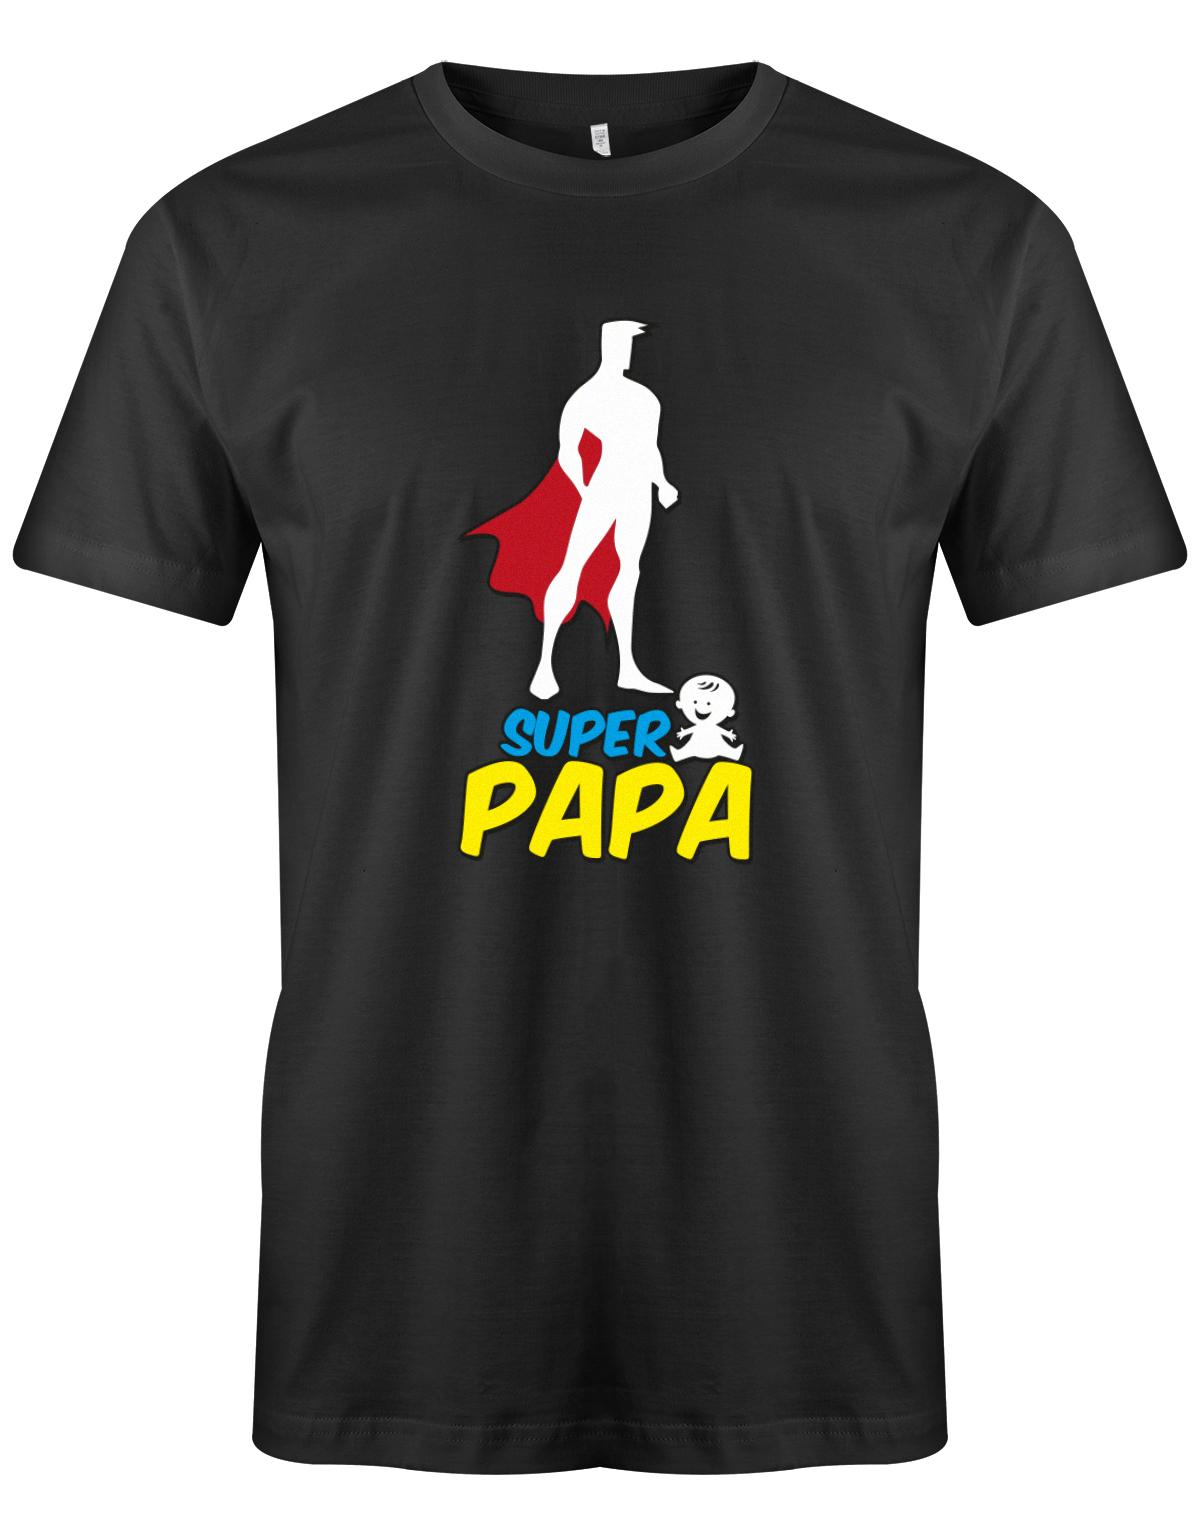 Super-Papa-Herren-Shirt-Schwarz